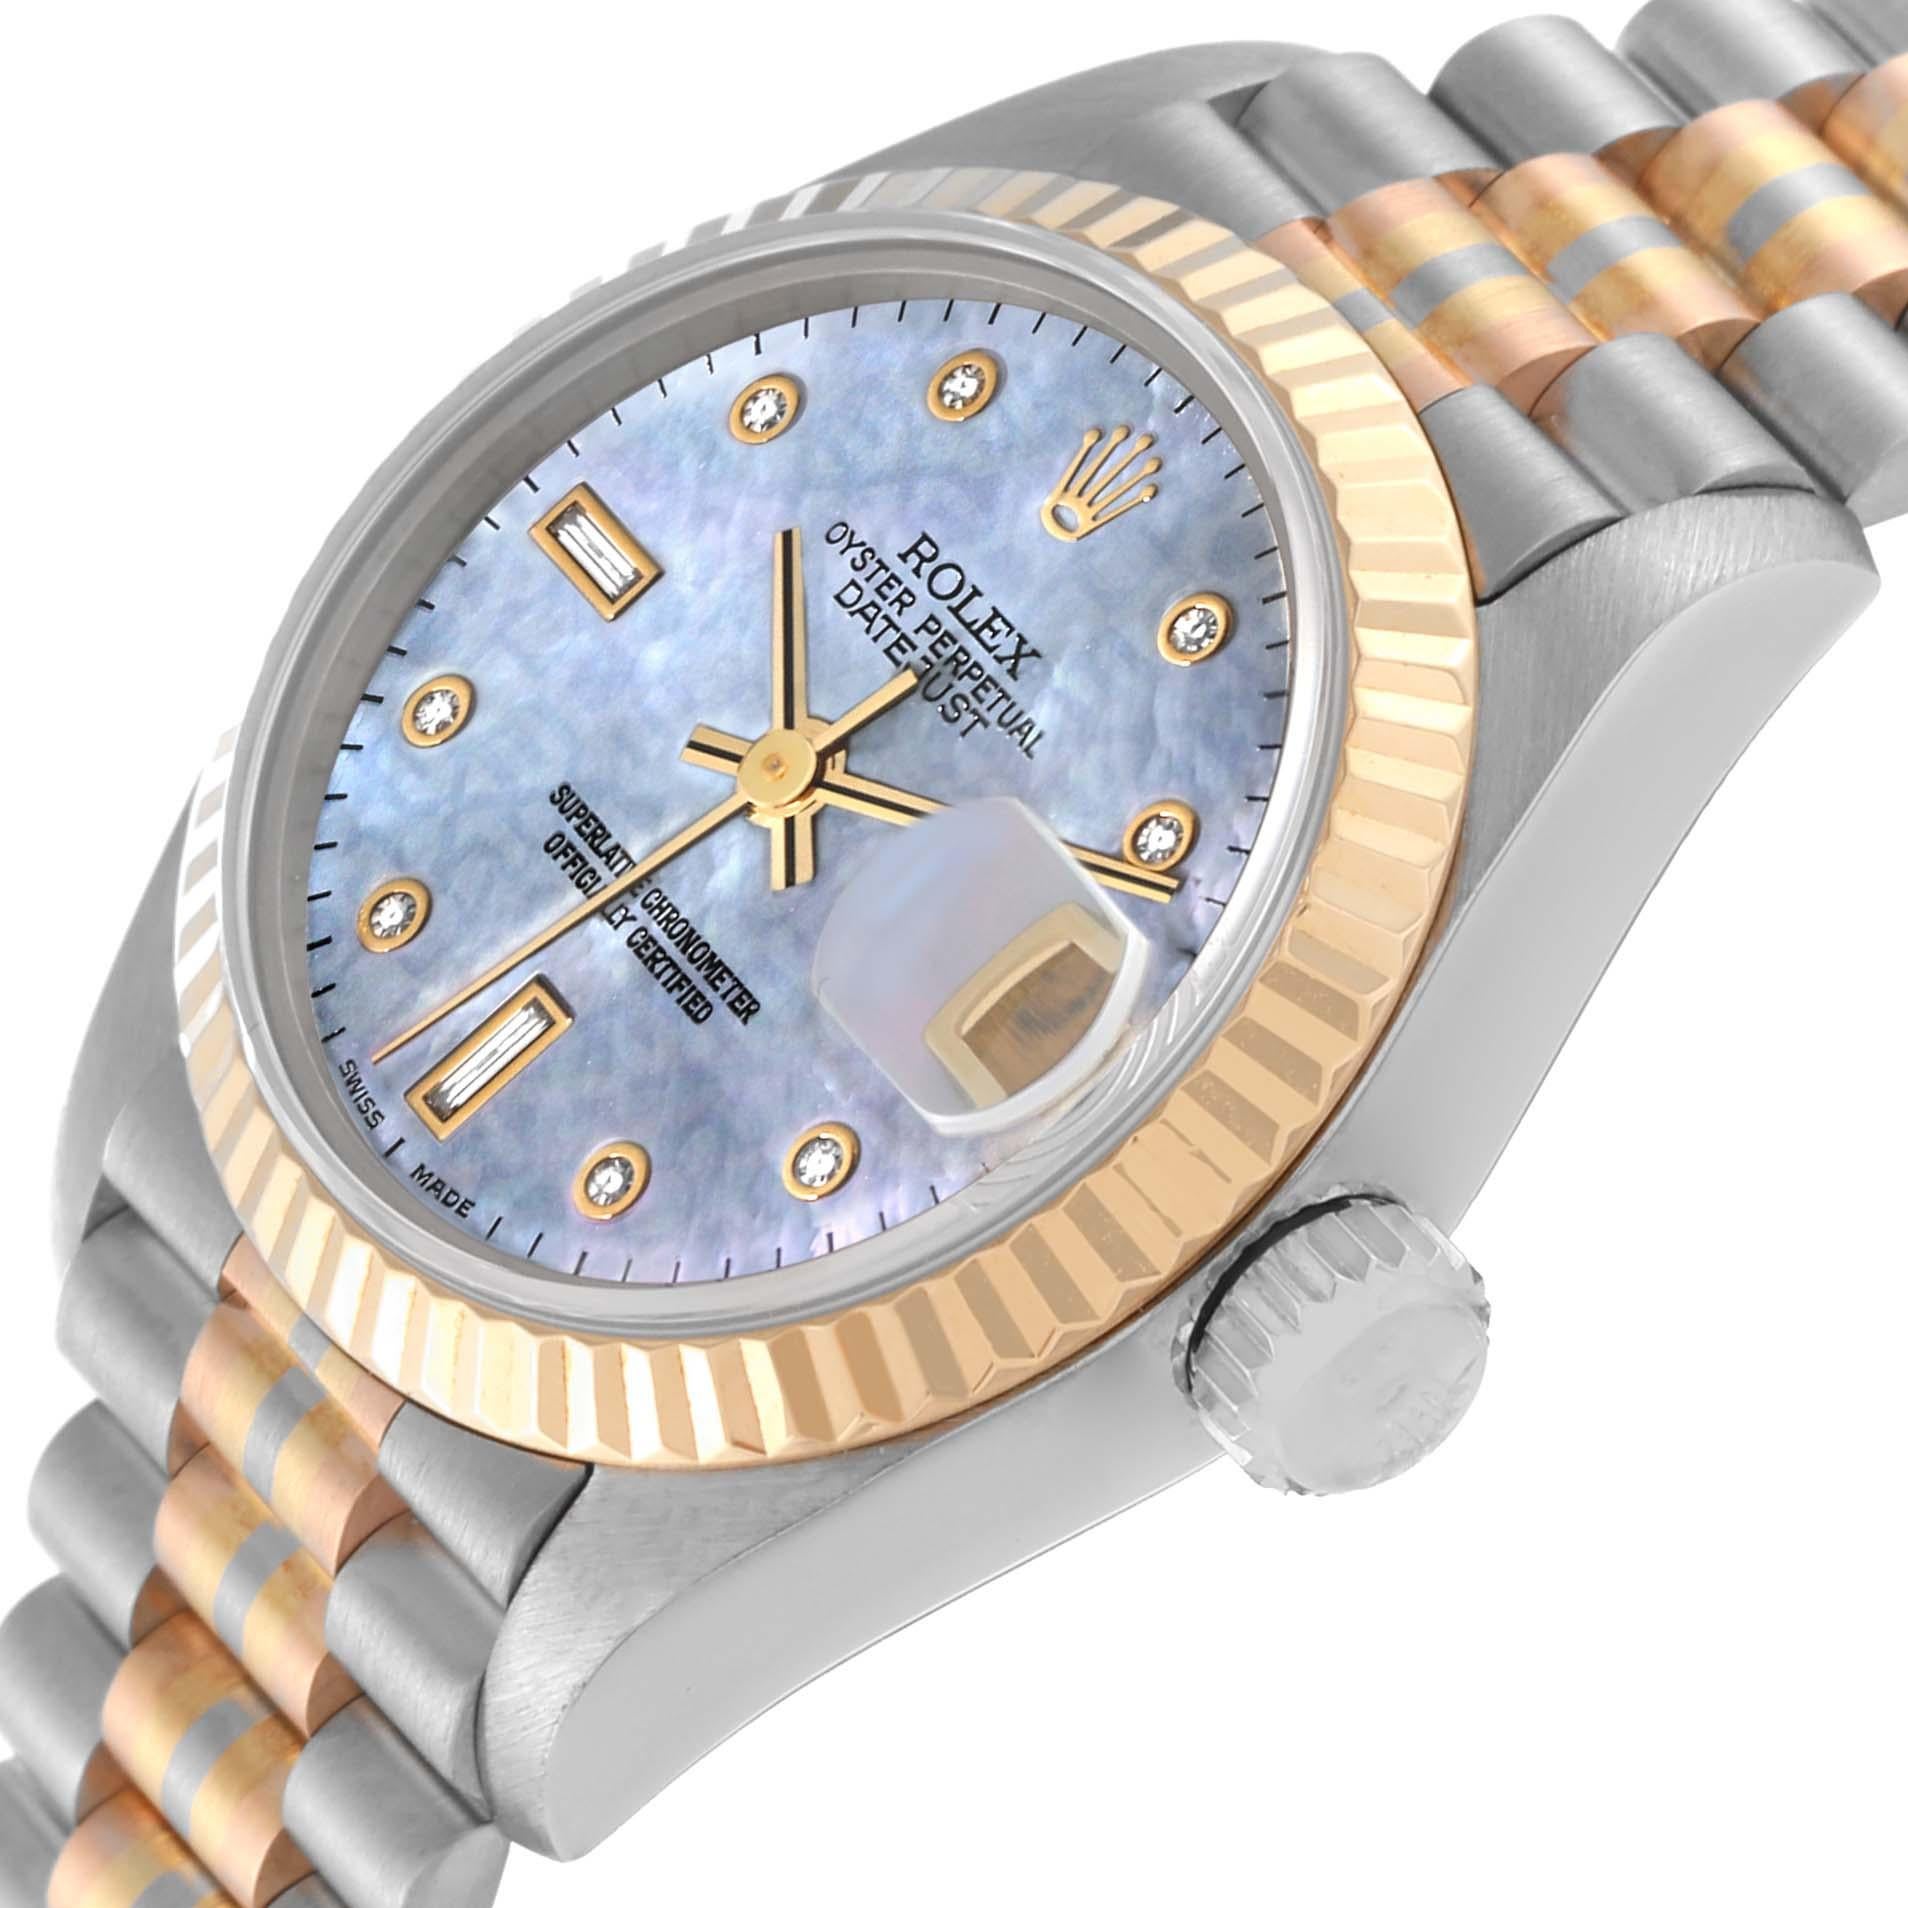 Rolex President Tridor White Yellow Rose Gold MOP Diamond Ladies Watch 69179. Mouvement à remontage automatique officiellement certifié chronomètre. Boîtier en or blanc 18 carats de 26,0 mm de diamètre. Logo Rolex sur une couronne. Lunette cannelée